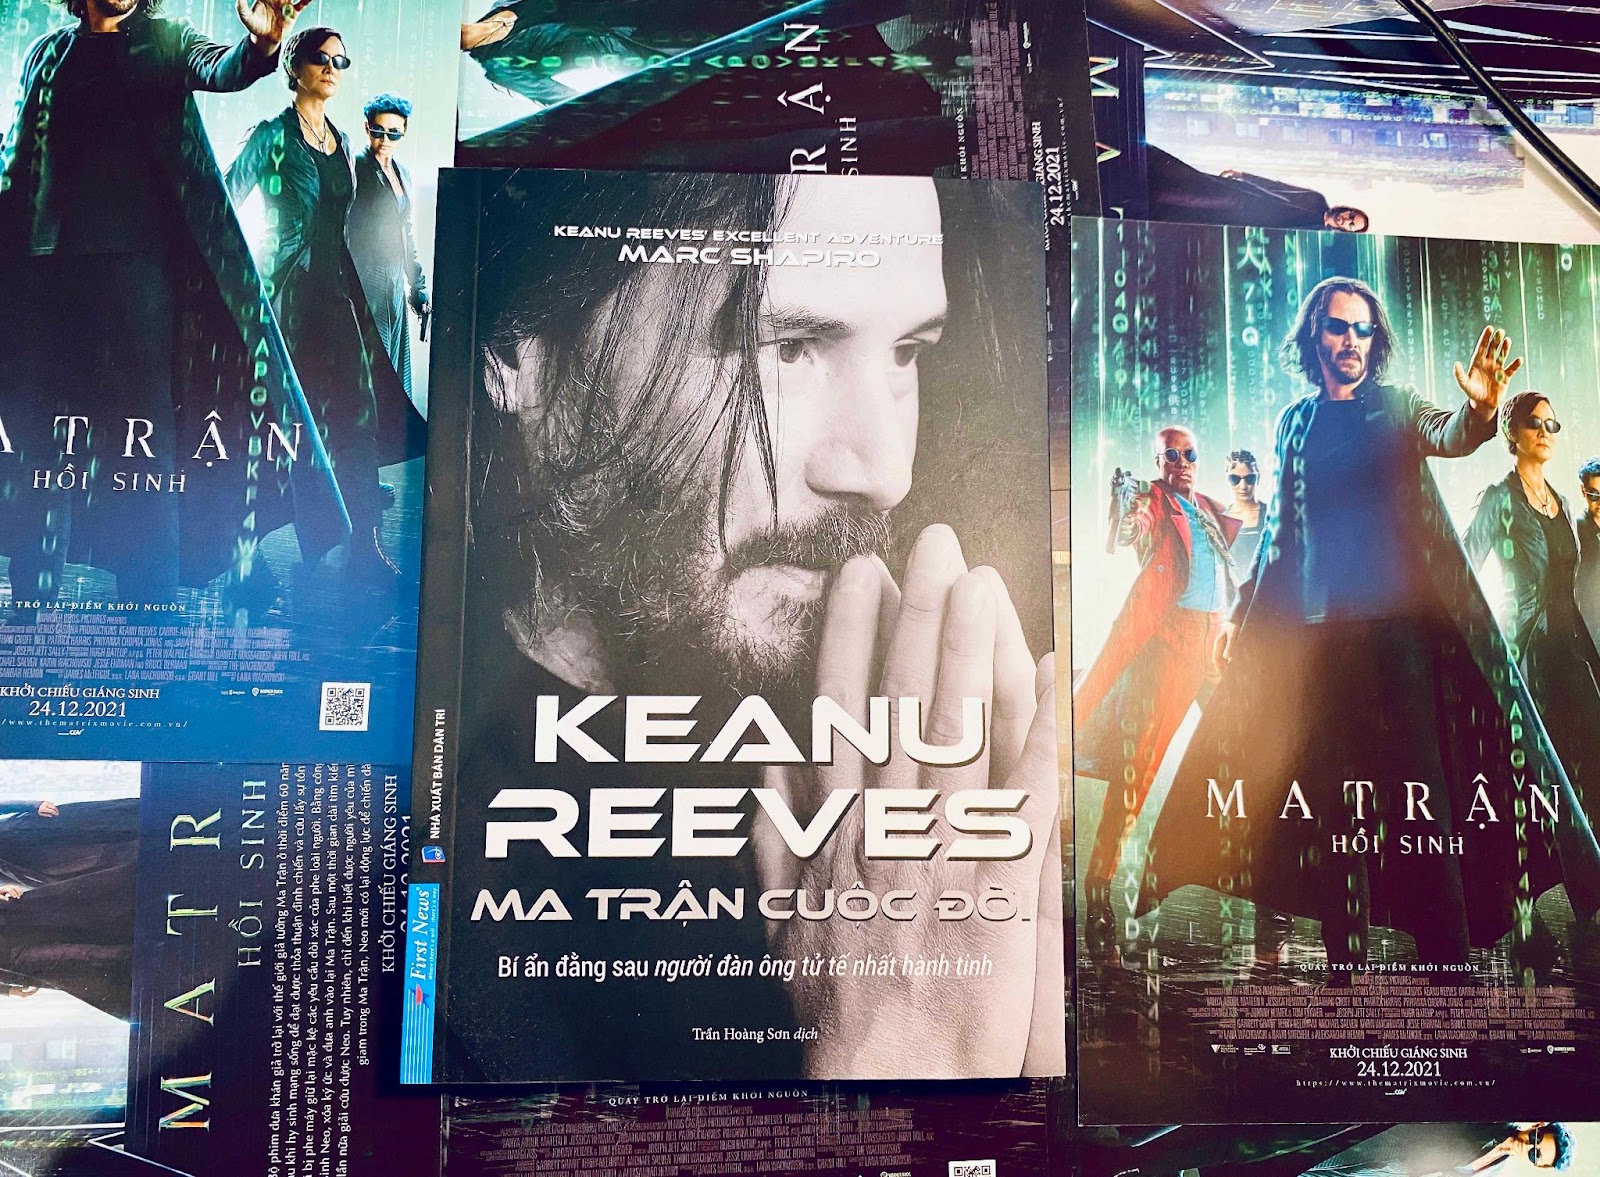 'Ma trận cuộc đời Keanu Reeves' - Giải mã khối rubik bí ẩn nhất Hollywood - 4